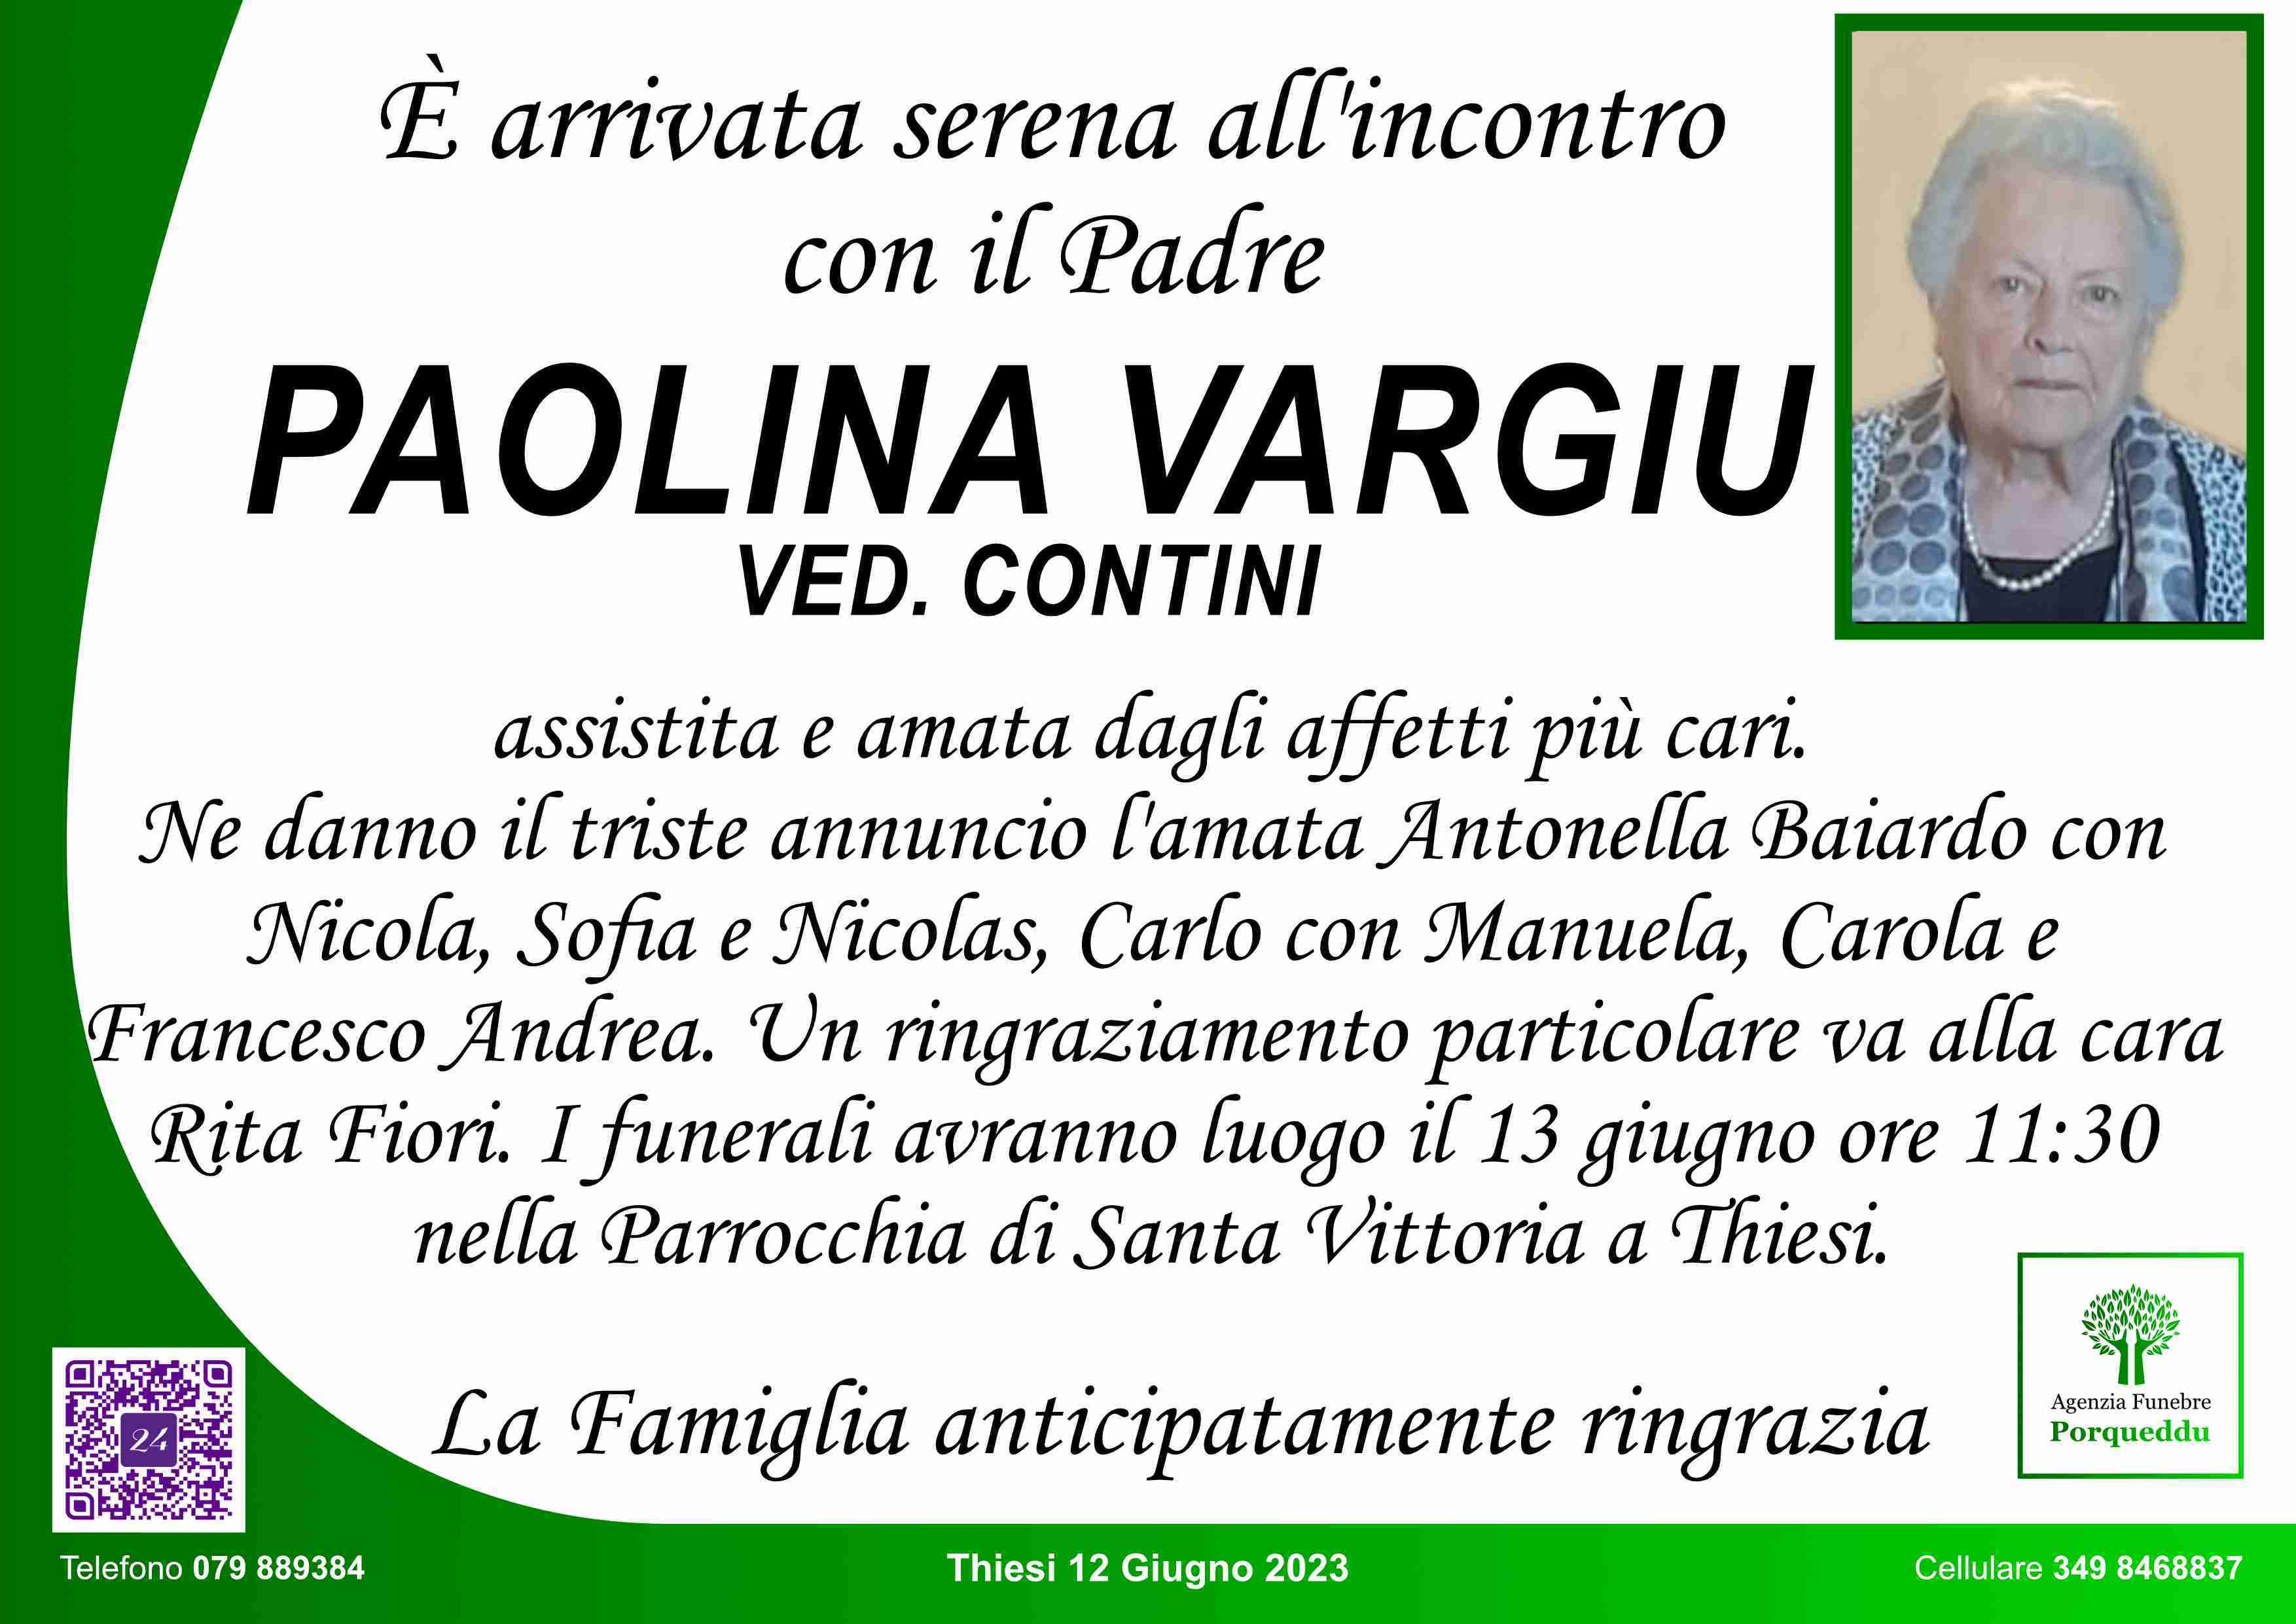 Paolina Vargiu